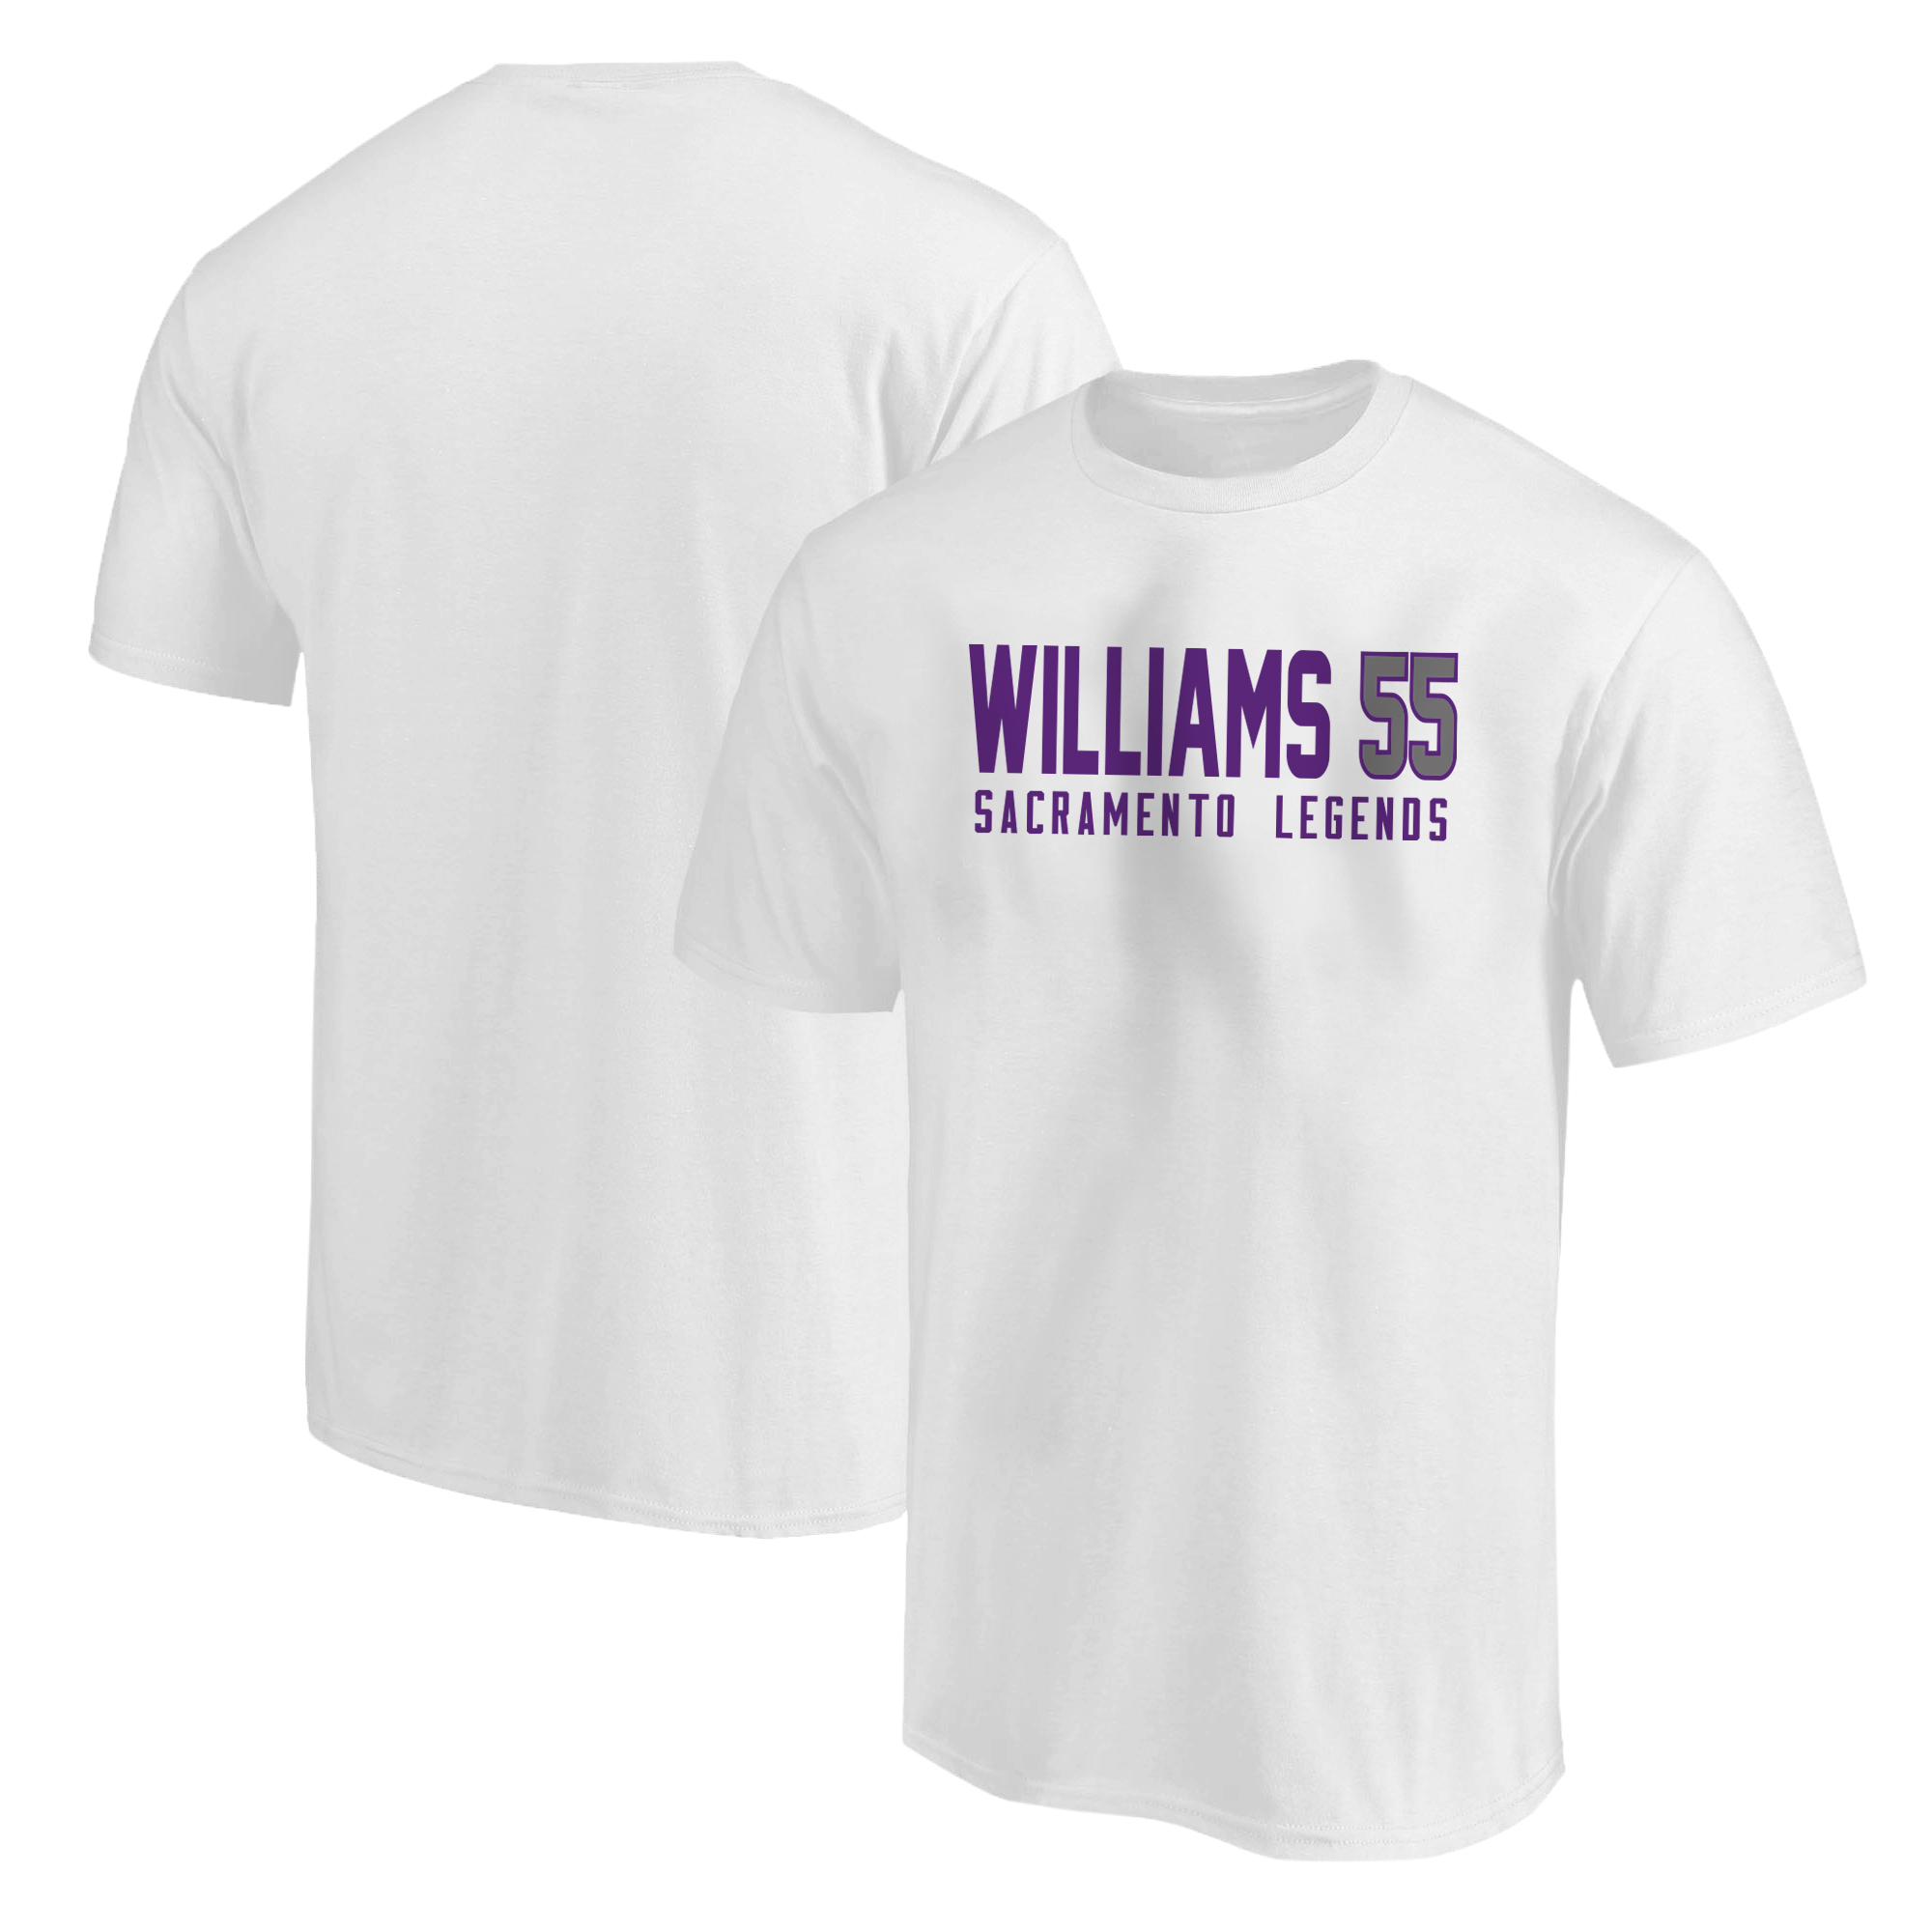 Jason Williams Tshirt (TSH-WHT-863-WILLIAMS)